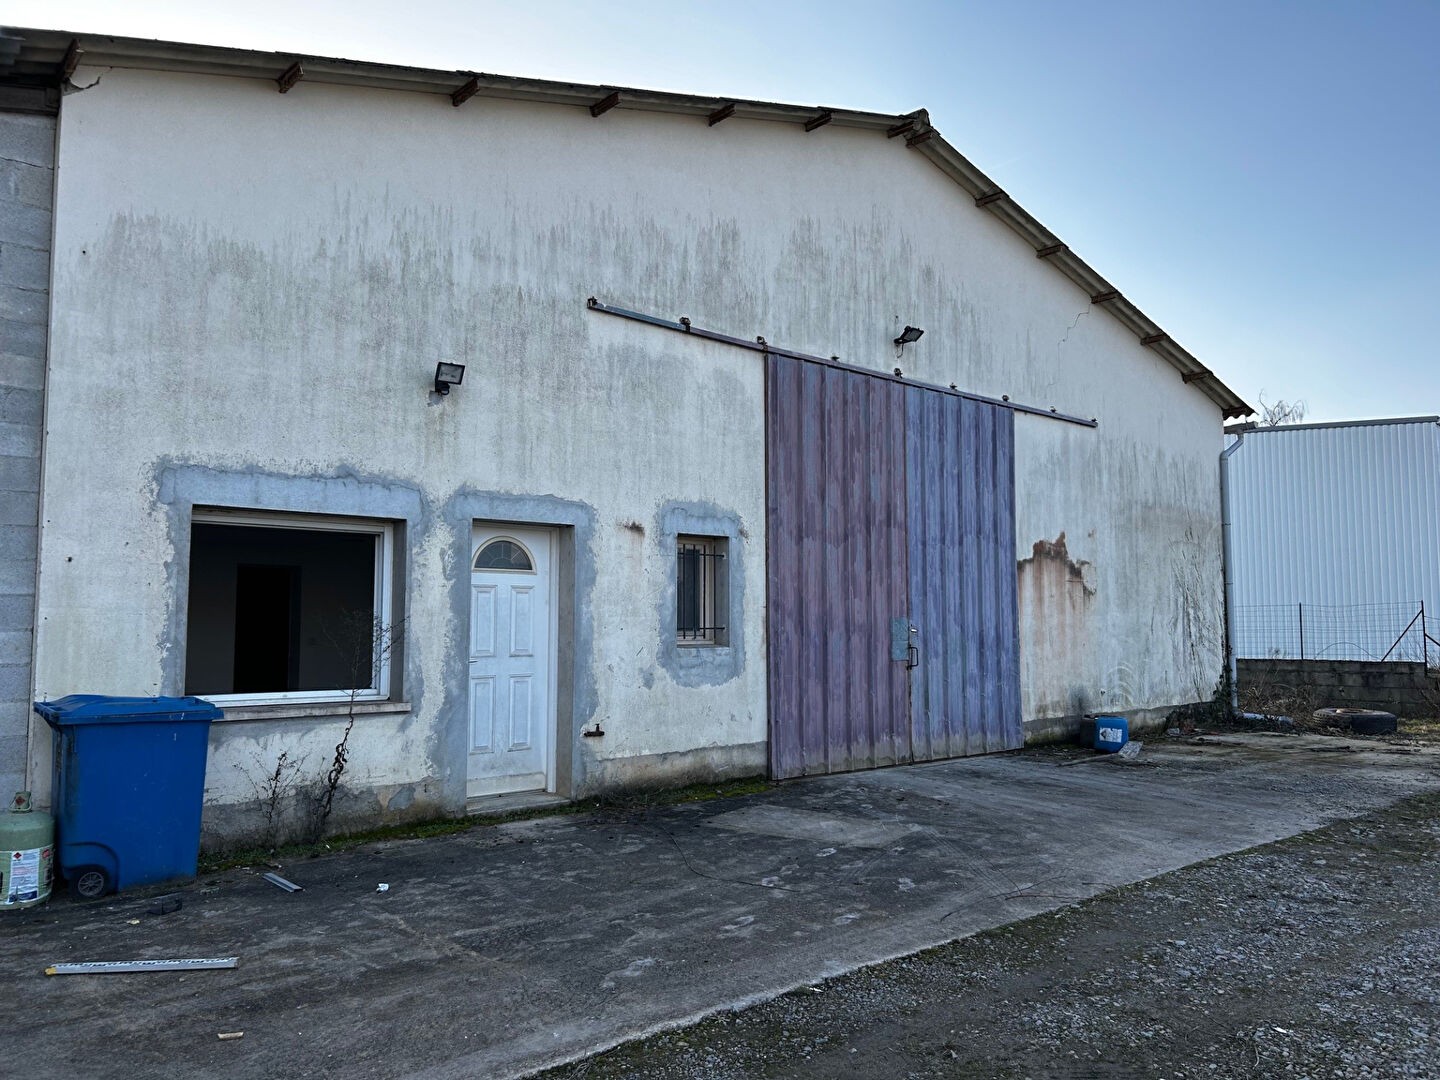 Location Garage / Parking à Limoges 4 pièces